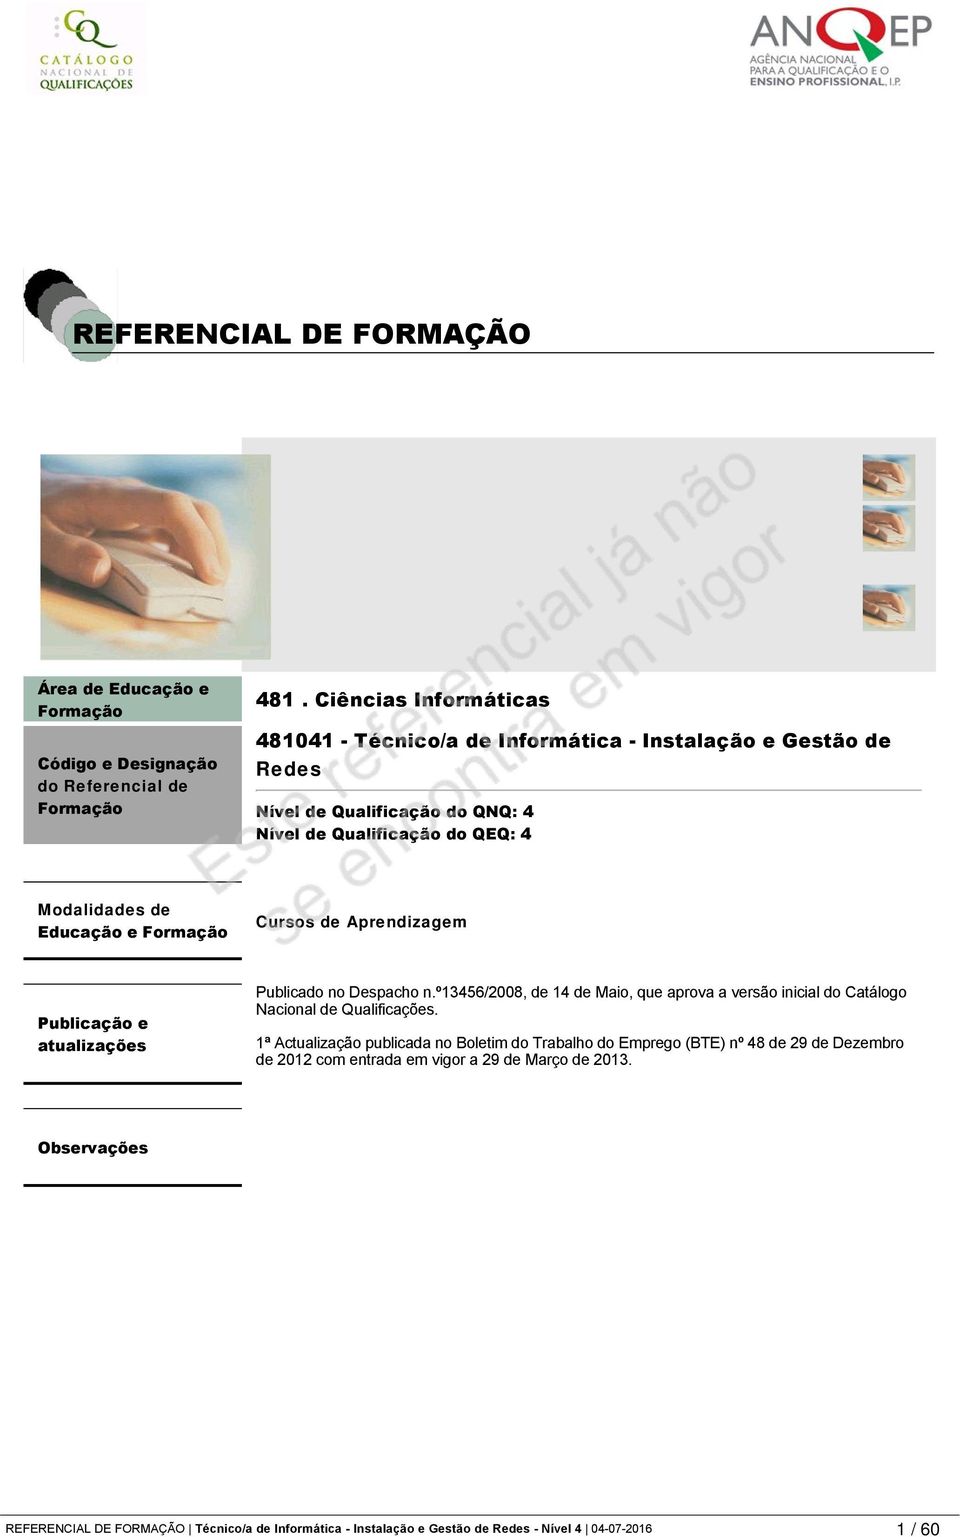 Publicação e atualizações Publicado no Despacho n.º13456/2008, de 14 de Maio, que aprova a versão inicial do Catálogo Nacional de Qualificações.